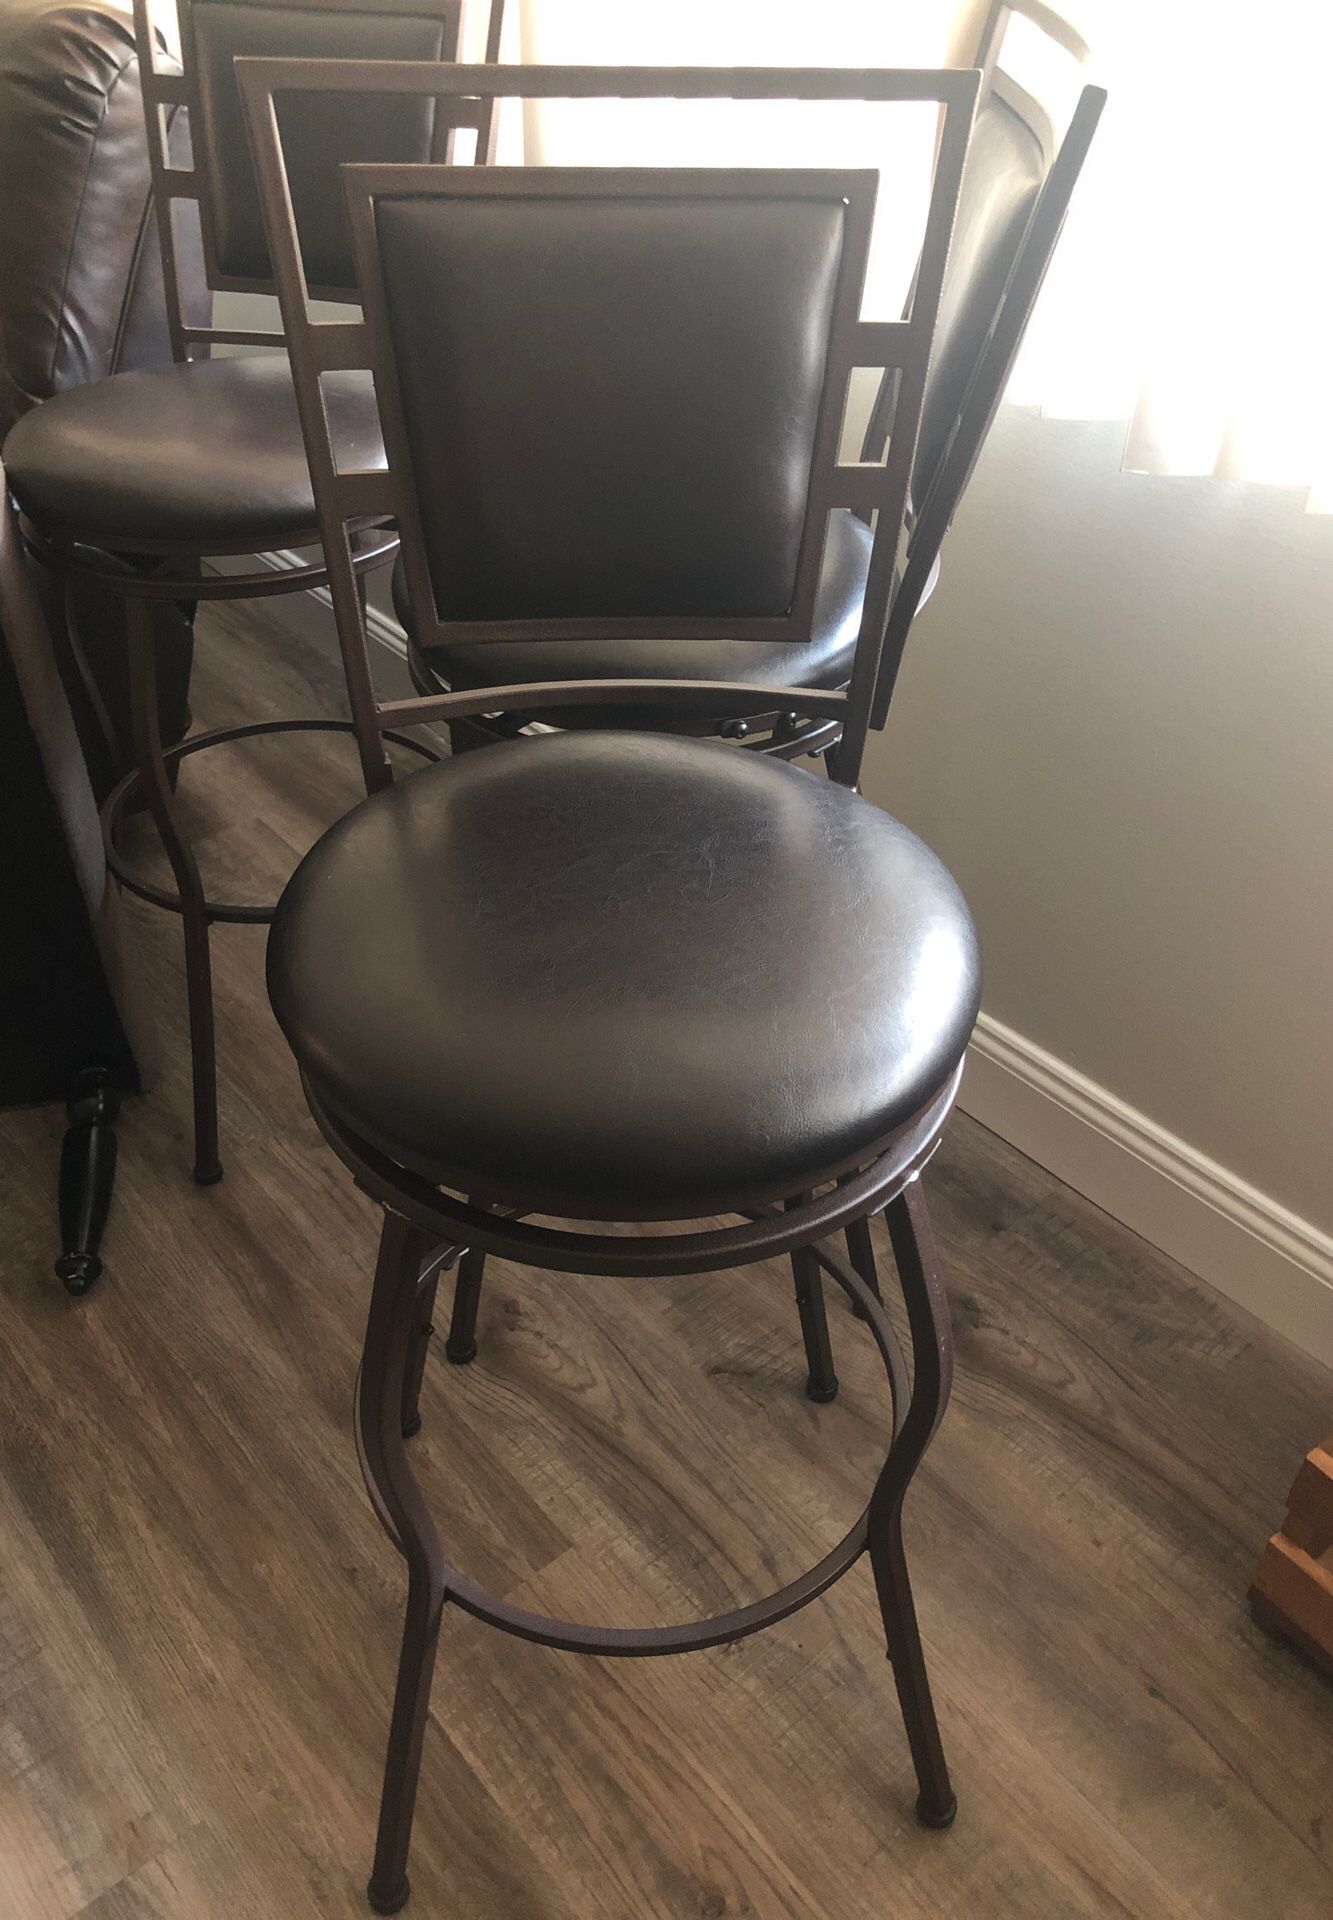 Leather adjustable bar stool